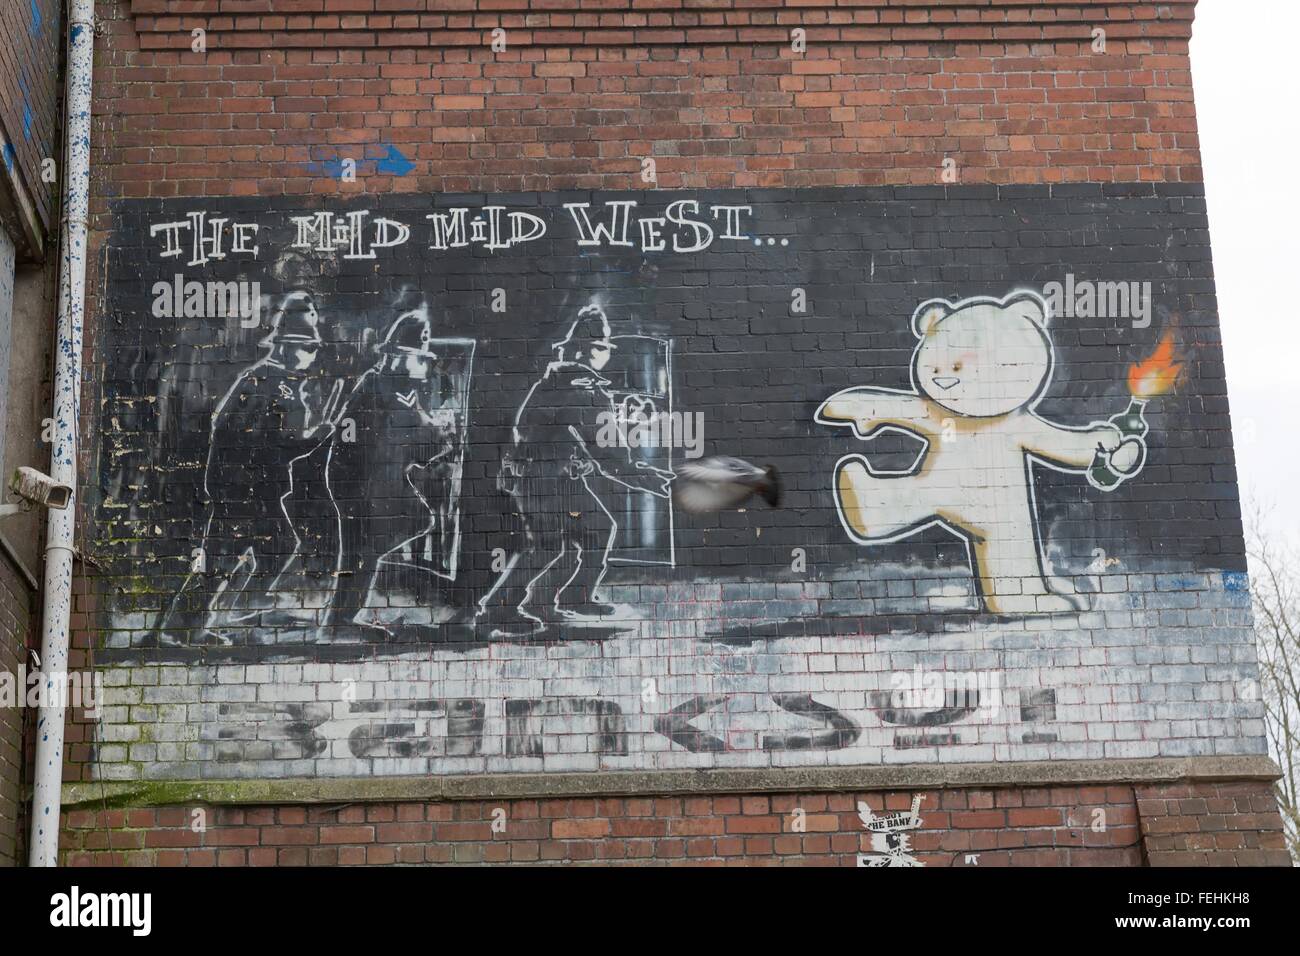 Aprile 2014 - Bristol, Regno Unito: Un graffiti di Banksy chiamato il mite mite, ad ovest di un orso con il fuoco nella sua mano mirando a Foto Stock